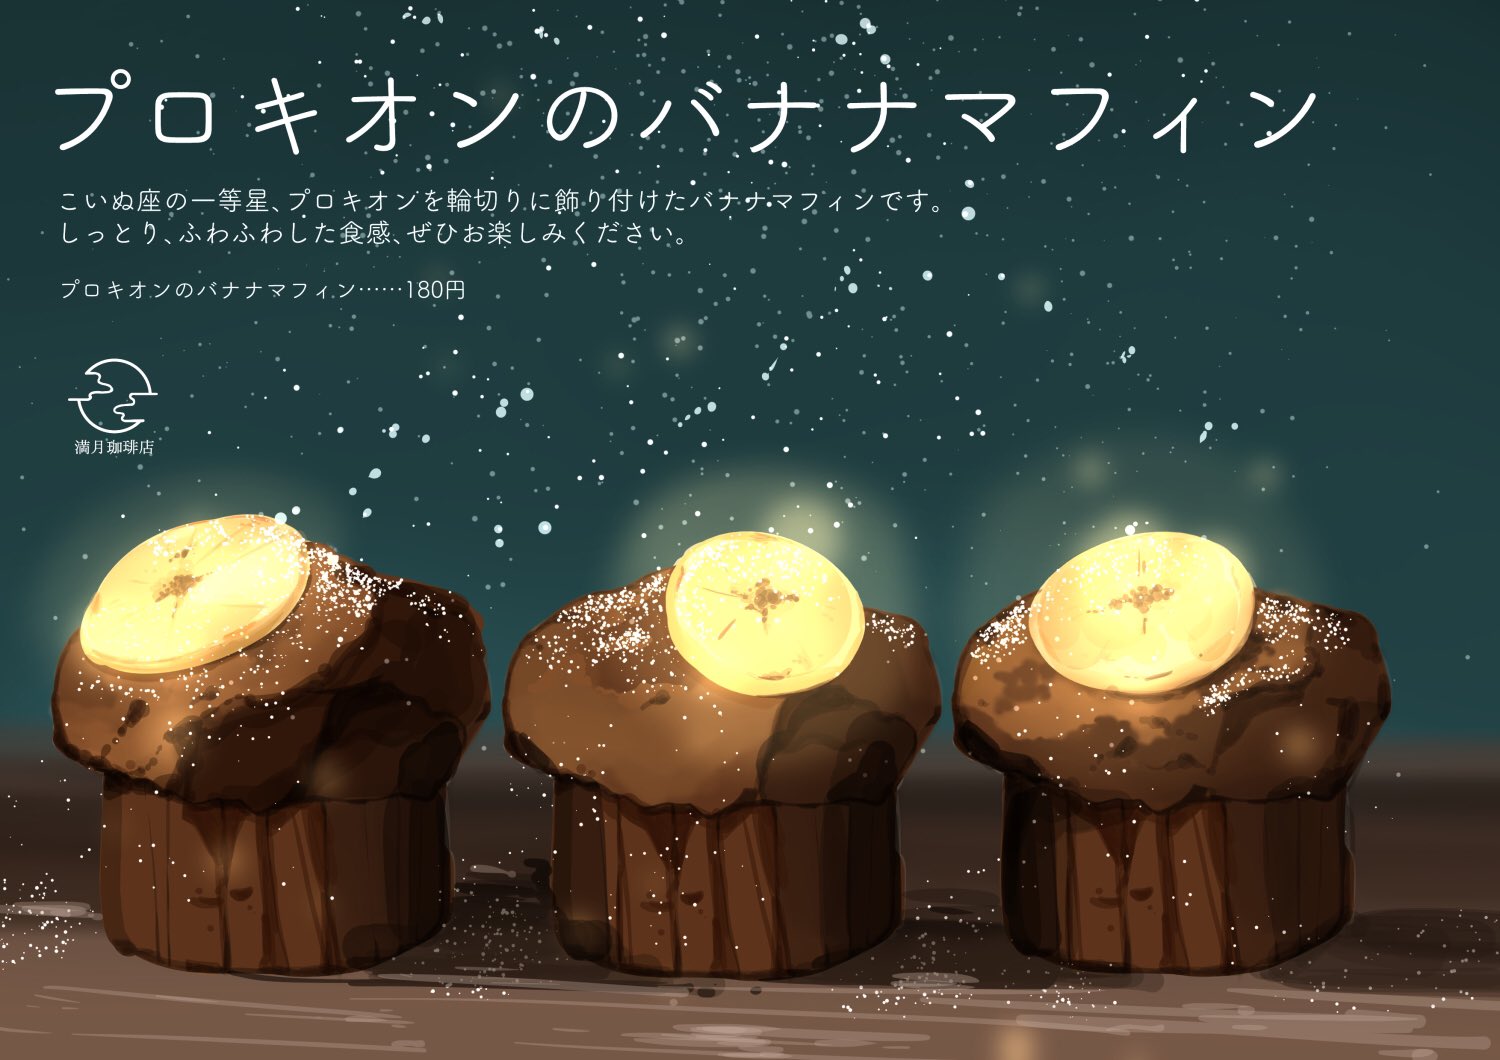 桜田千尋 7月日画集発売 No Twitter プロキオンのバナナマフィン こいぬ座の一等星 プロキオンを輪切り飾り付けたバナナマフィンです しっとり ふわふわした食感 ぜひお楽しみください 満月珈琲店